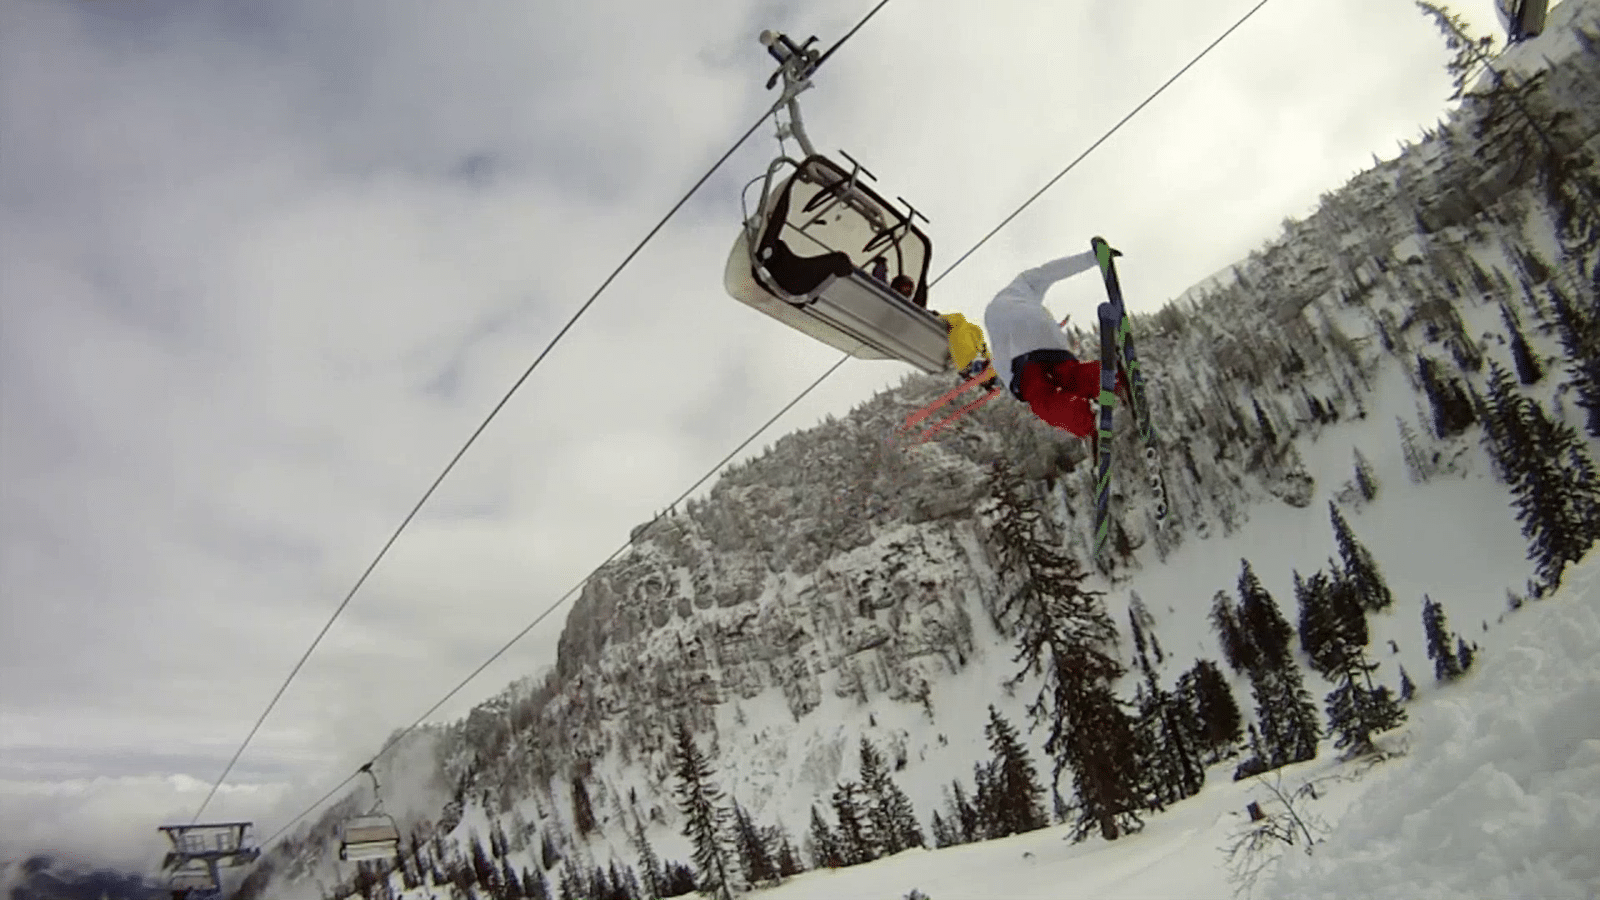 skilift drop